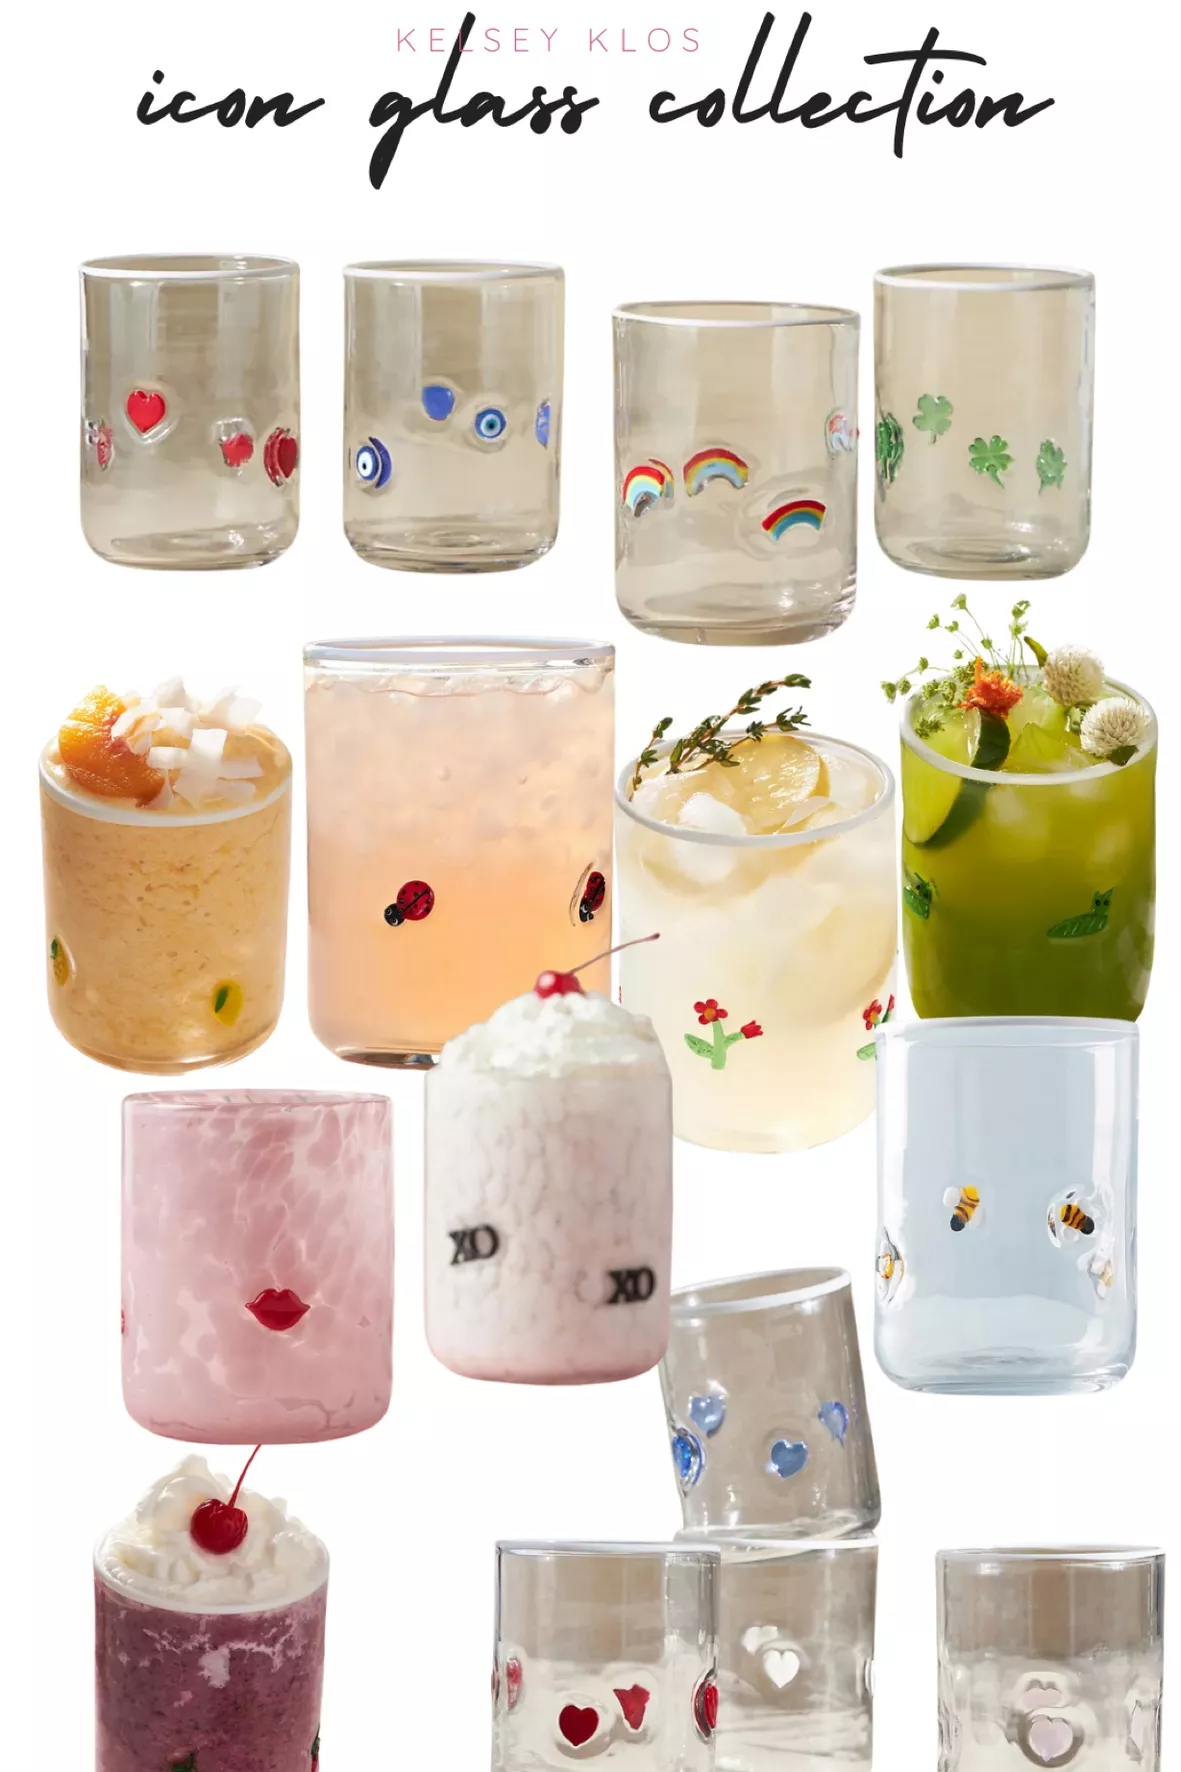 Icon Juice Glasses, Set of 4